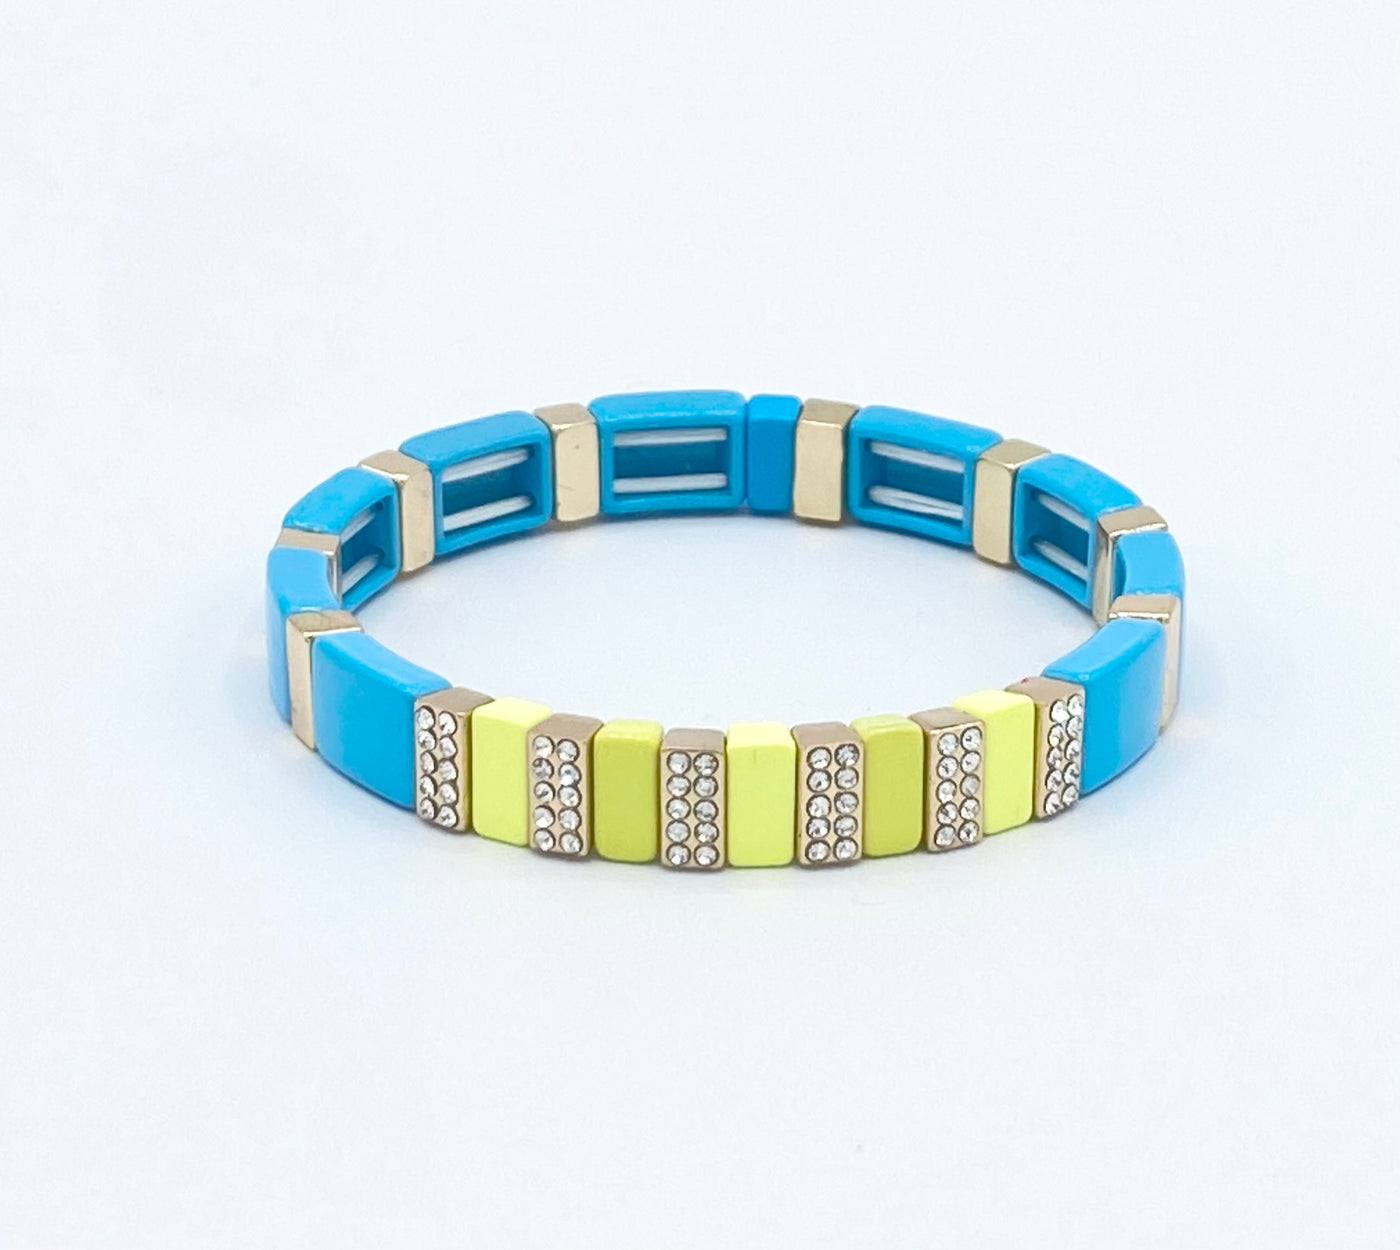 Mettez en surbrillance les bracelets en diamant de perles de carreaux d'émail, les bracelets Colorblock, les perles d'émail, les bracelets Tila tendance